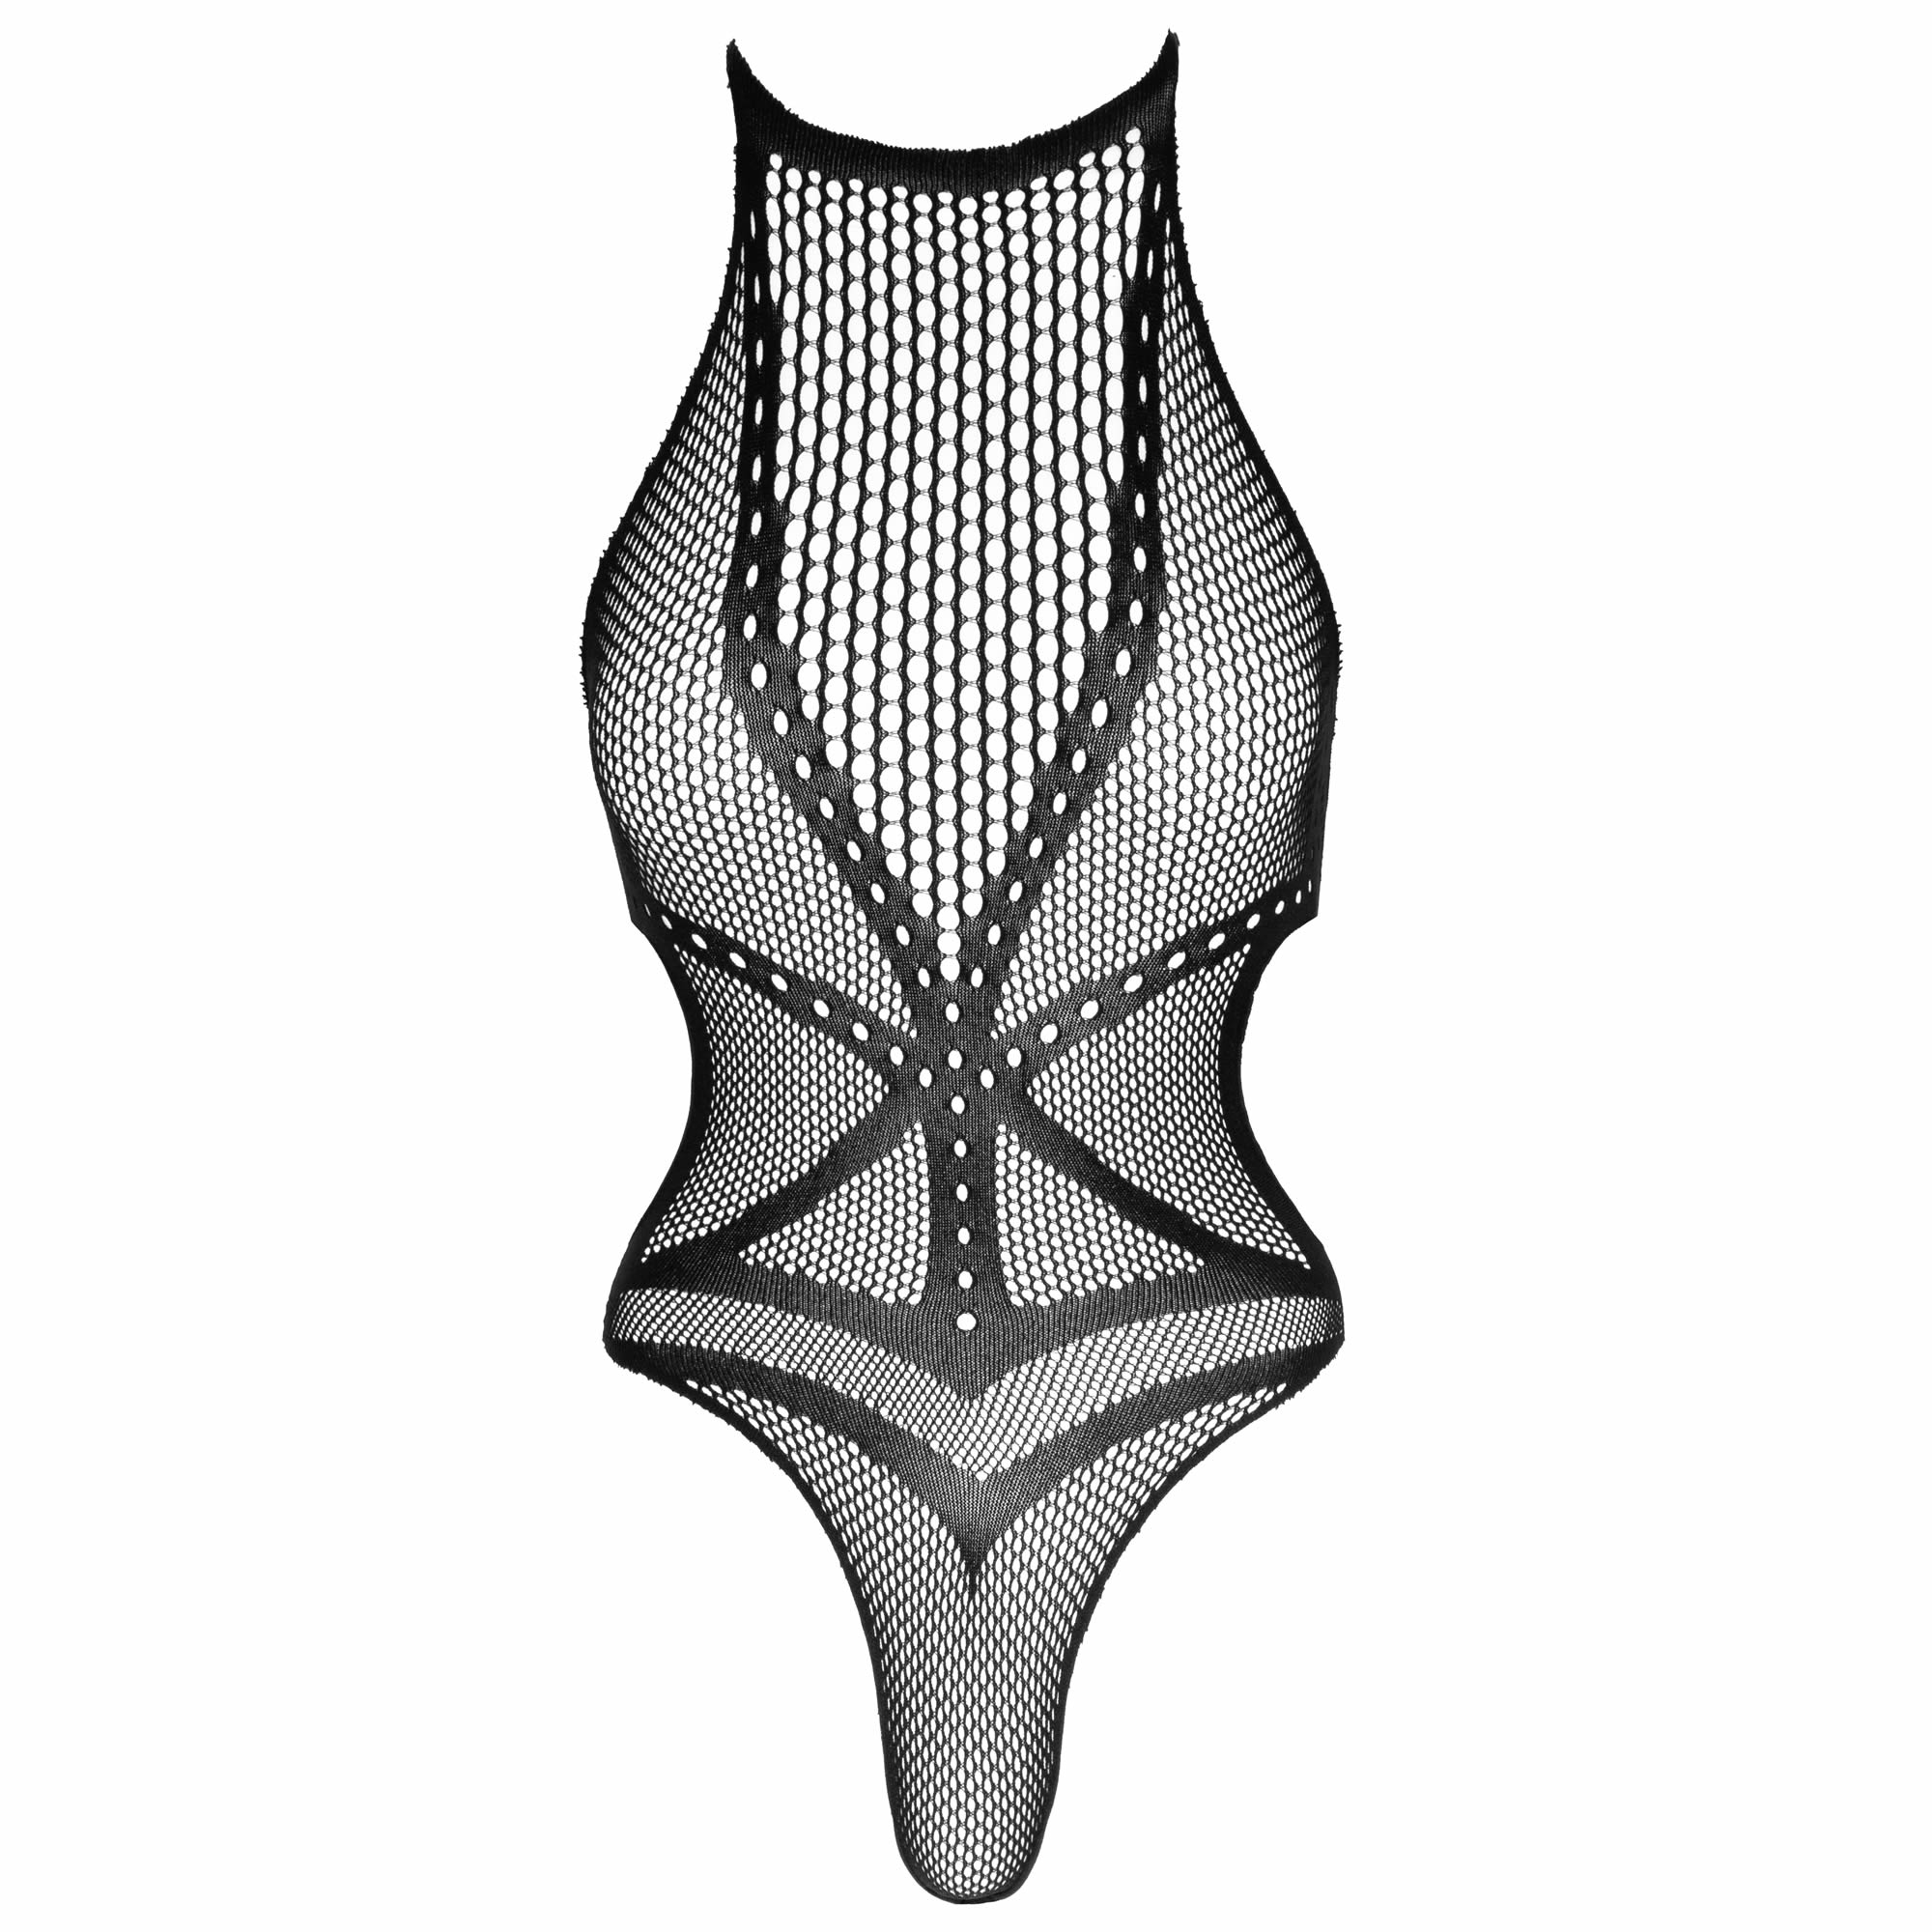 Køb NOXQSE Net Body med Harness Design Foto